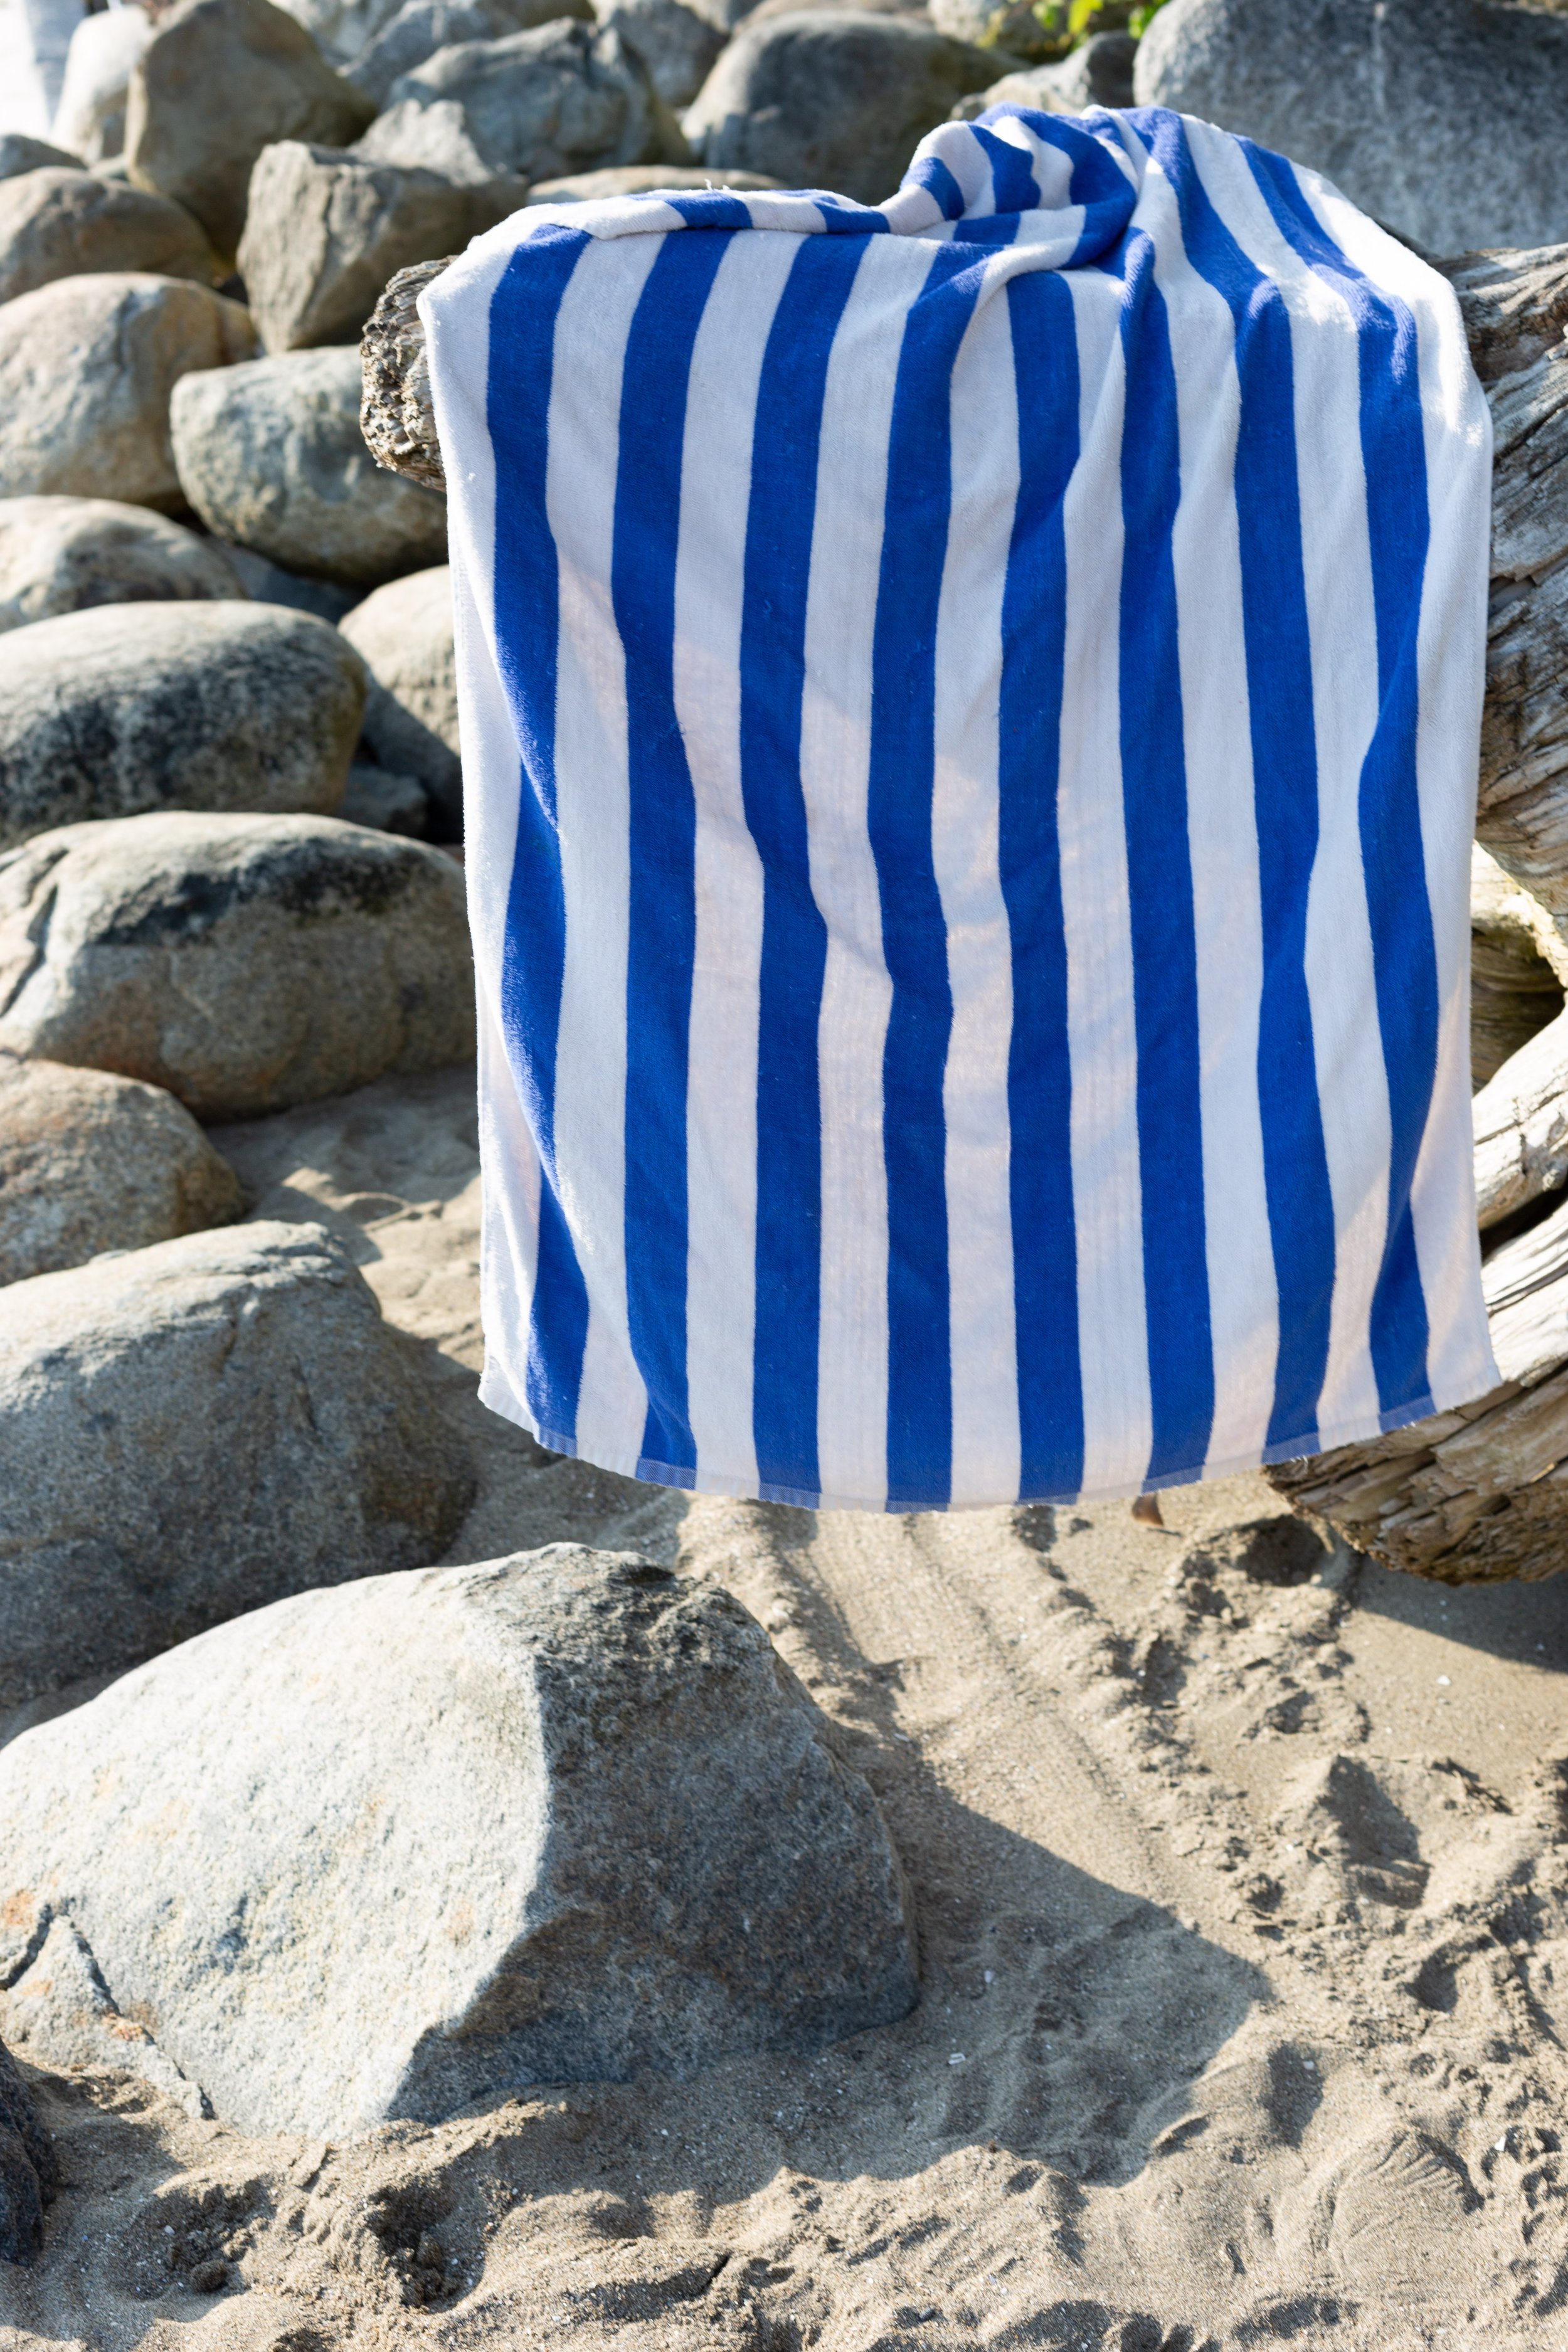 Towel on the beach-3200.jpg